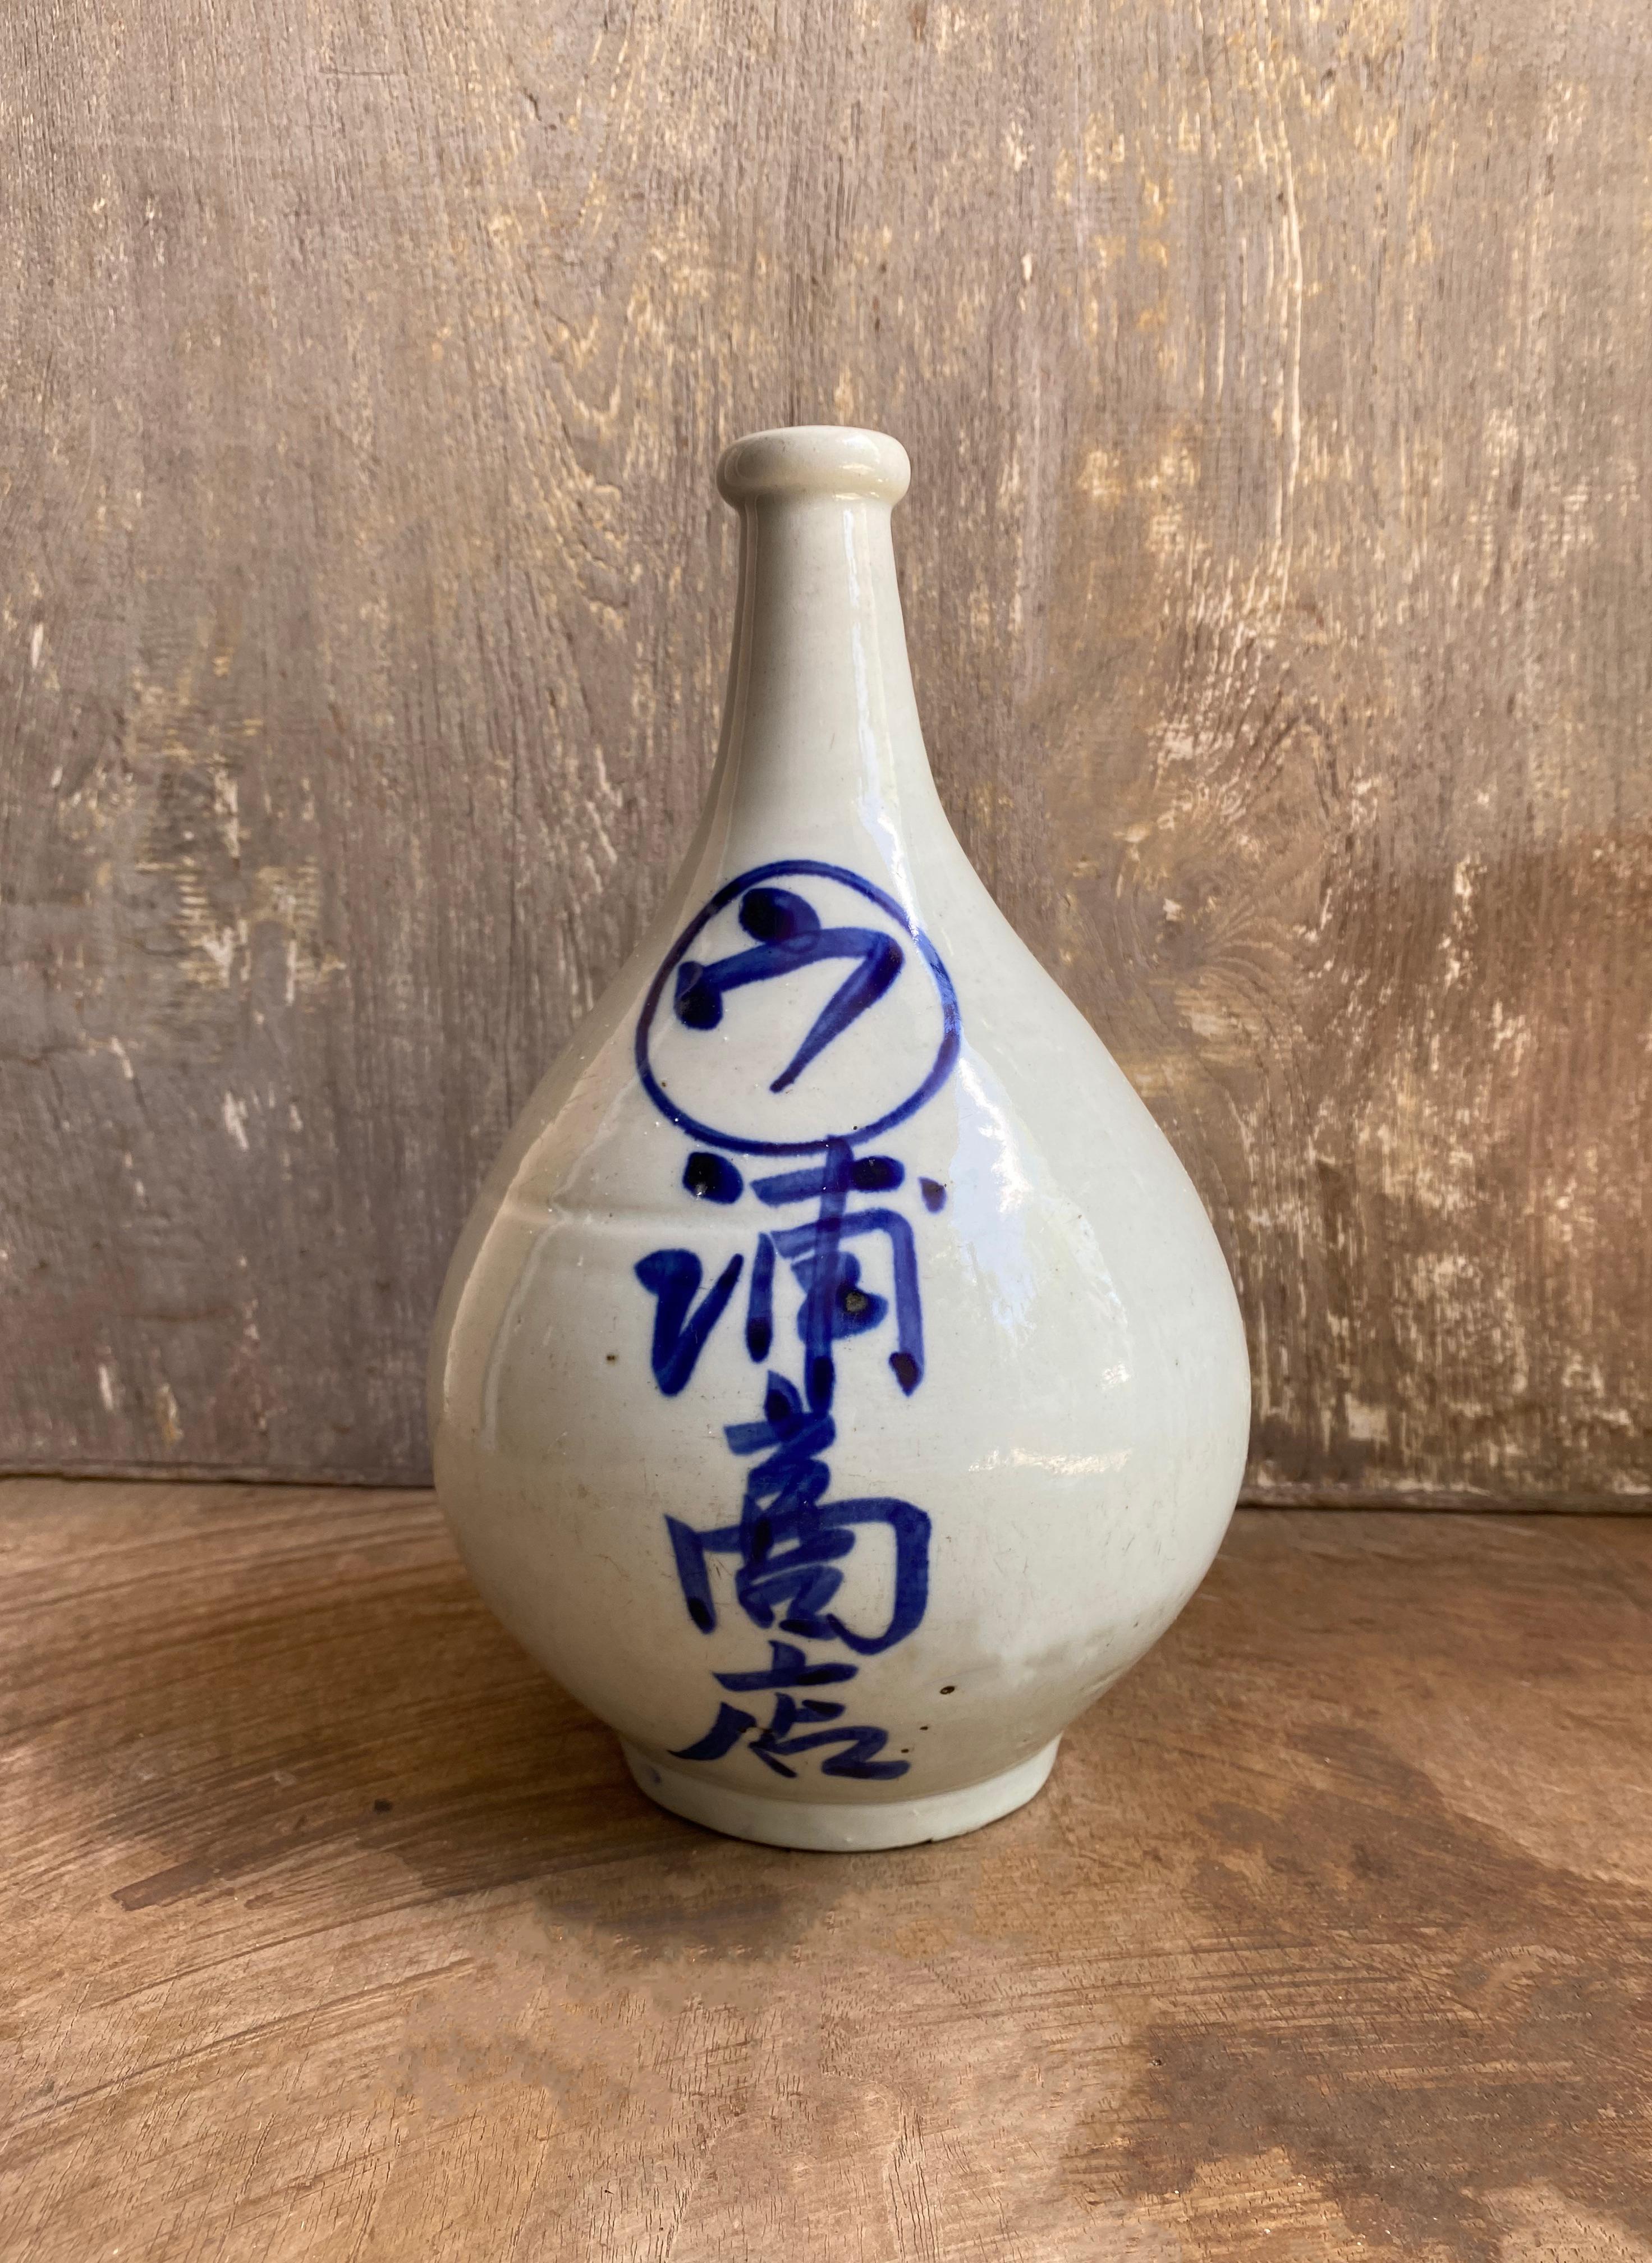 Ein japanisches Sake-Glas aus Keramik aus dem frühen 20. Jahrhundert. Der Krug besteht aus glasierter Keramik und handgemalten Figuren. 

Abmessungen: Höhe 27cm x Durchmesser 17cm.

 